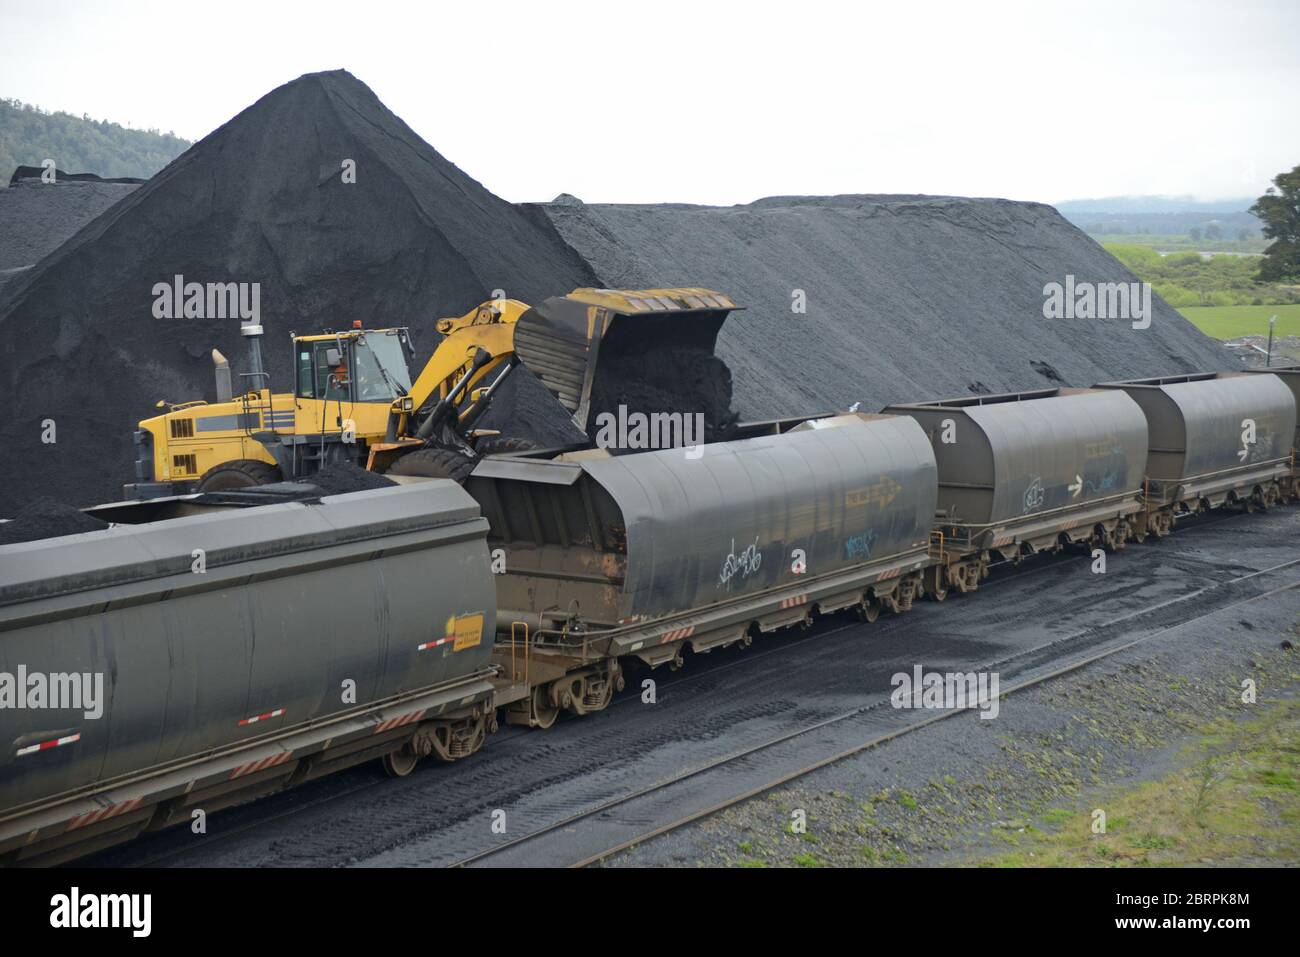 Un payloader remplit les wagons de train de charbon à une voie d'évitement de chemin de fer Banque D'Images